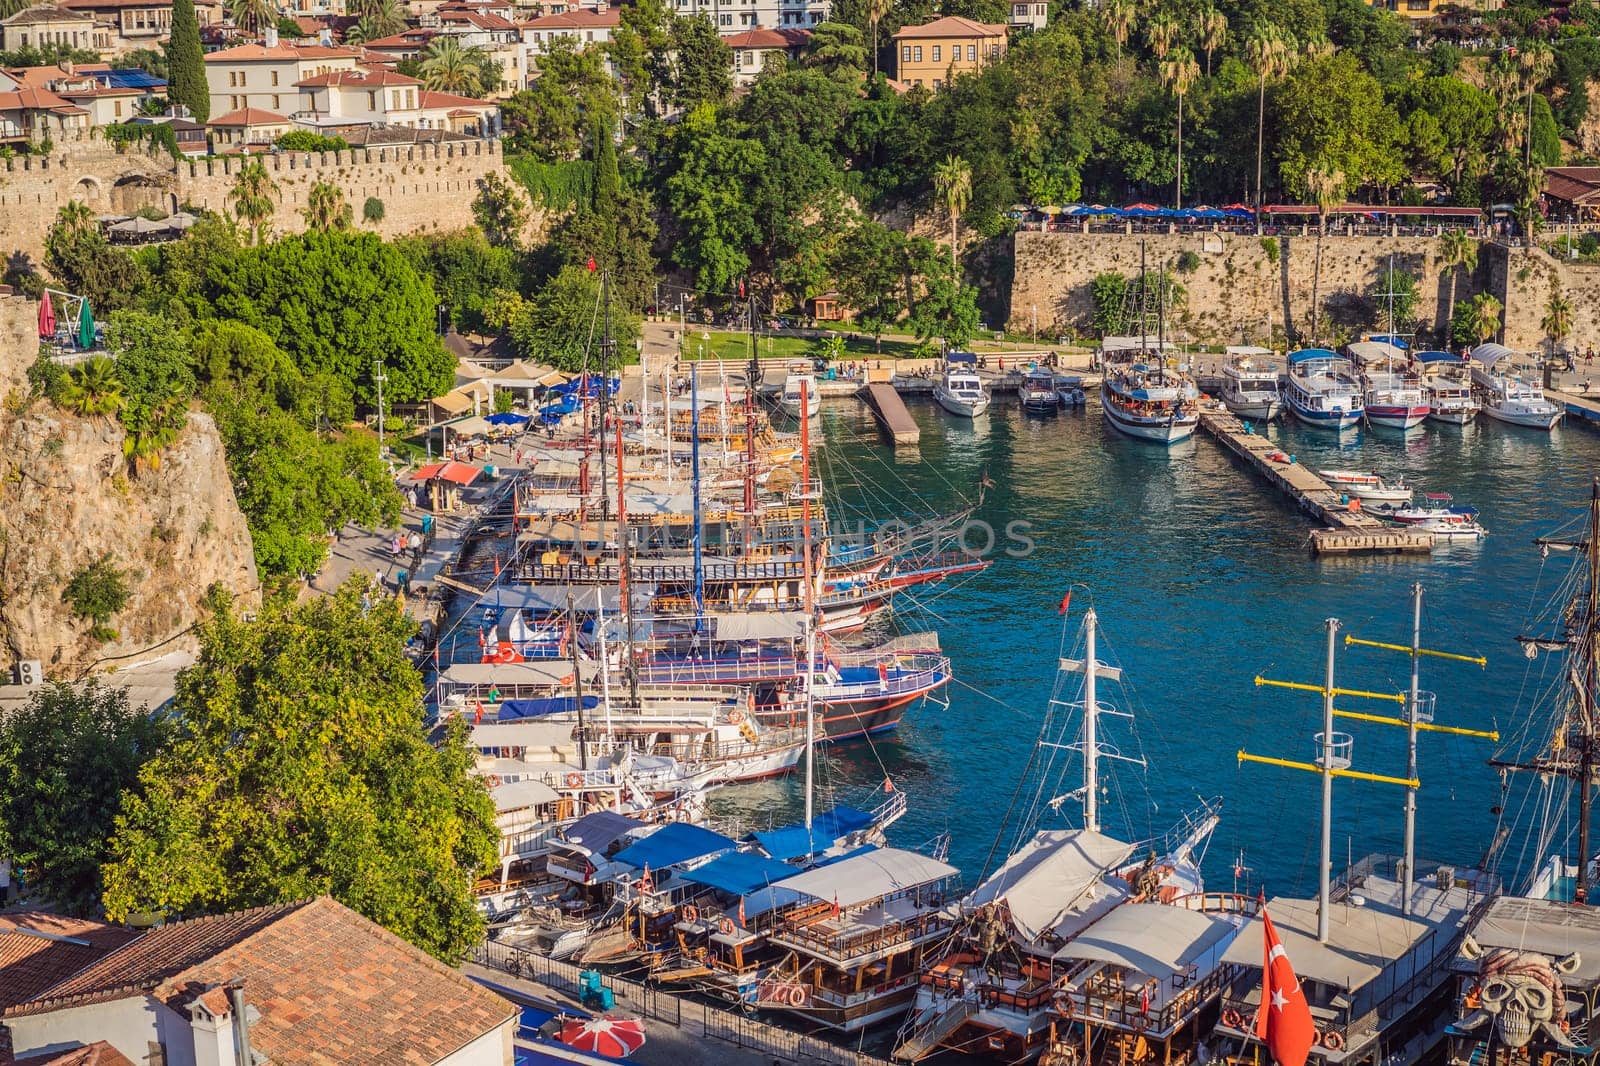 Old town Kaleici in Antalya. Panoramic view of Antalya Old Town port, Taurus mountains and Mediterrranean Sea, Turkey by galitskaya